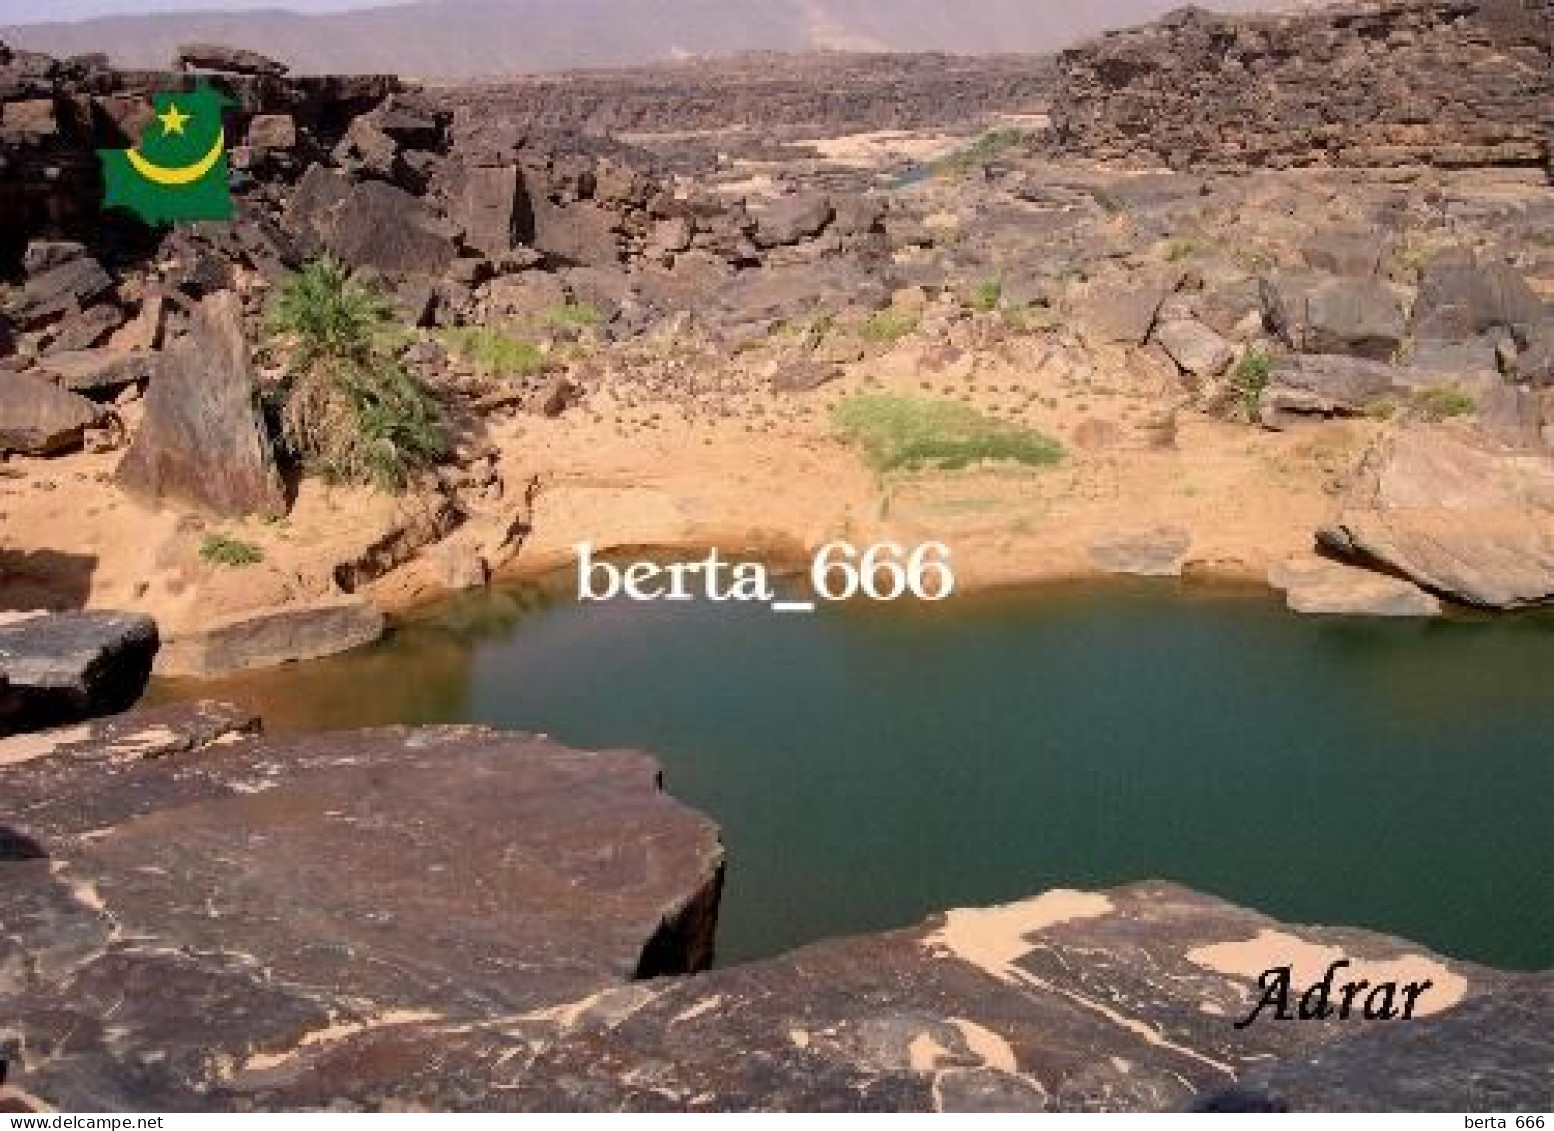 Mauritania Adrar Plateau Landscape New Postcard - Mauritania